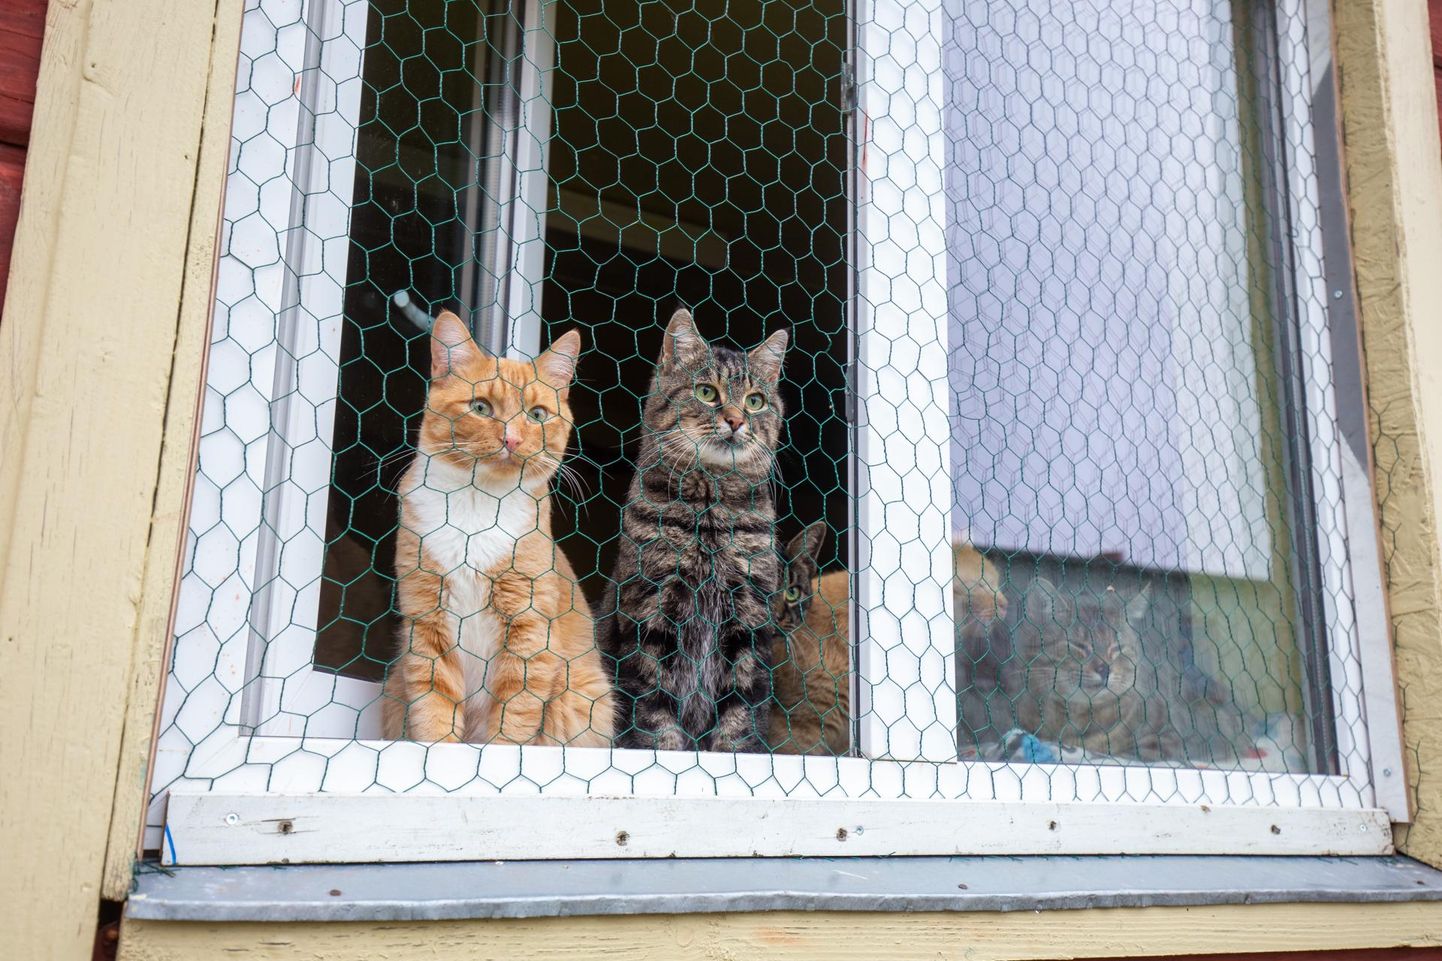 Kui kass on võetud, tuleb jälgida, et loomake avatud akna kaudu põgeneda ei saaks.
 